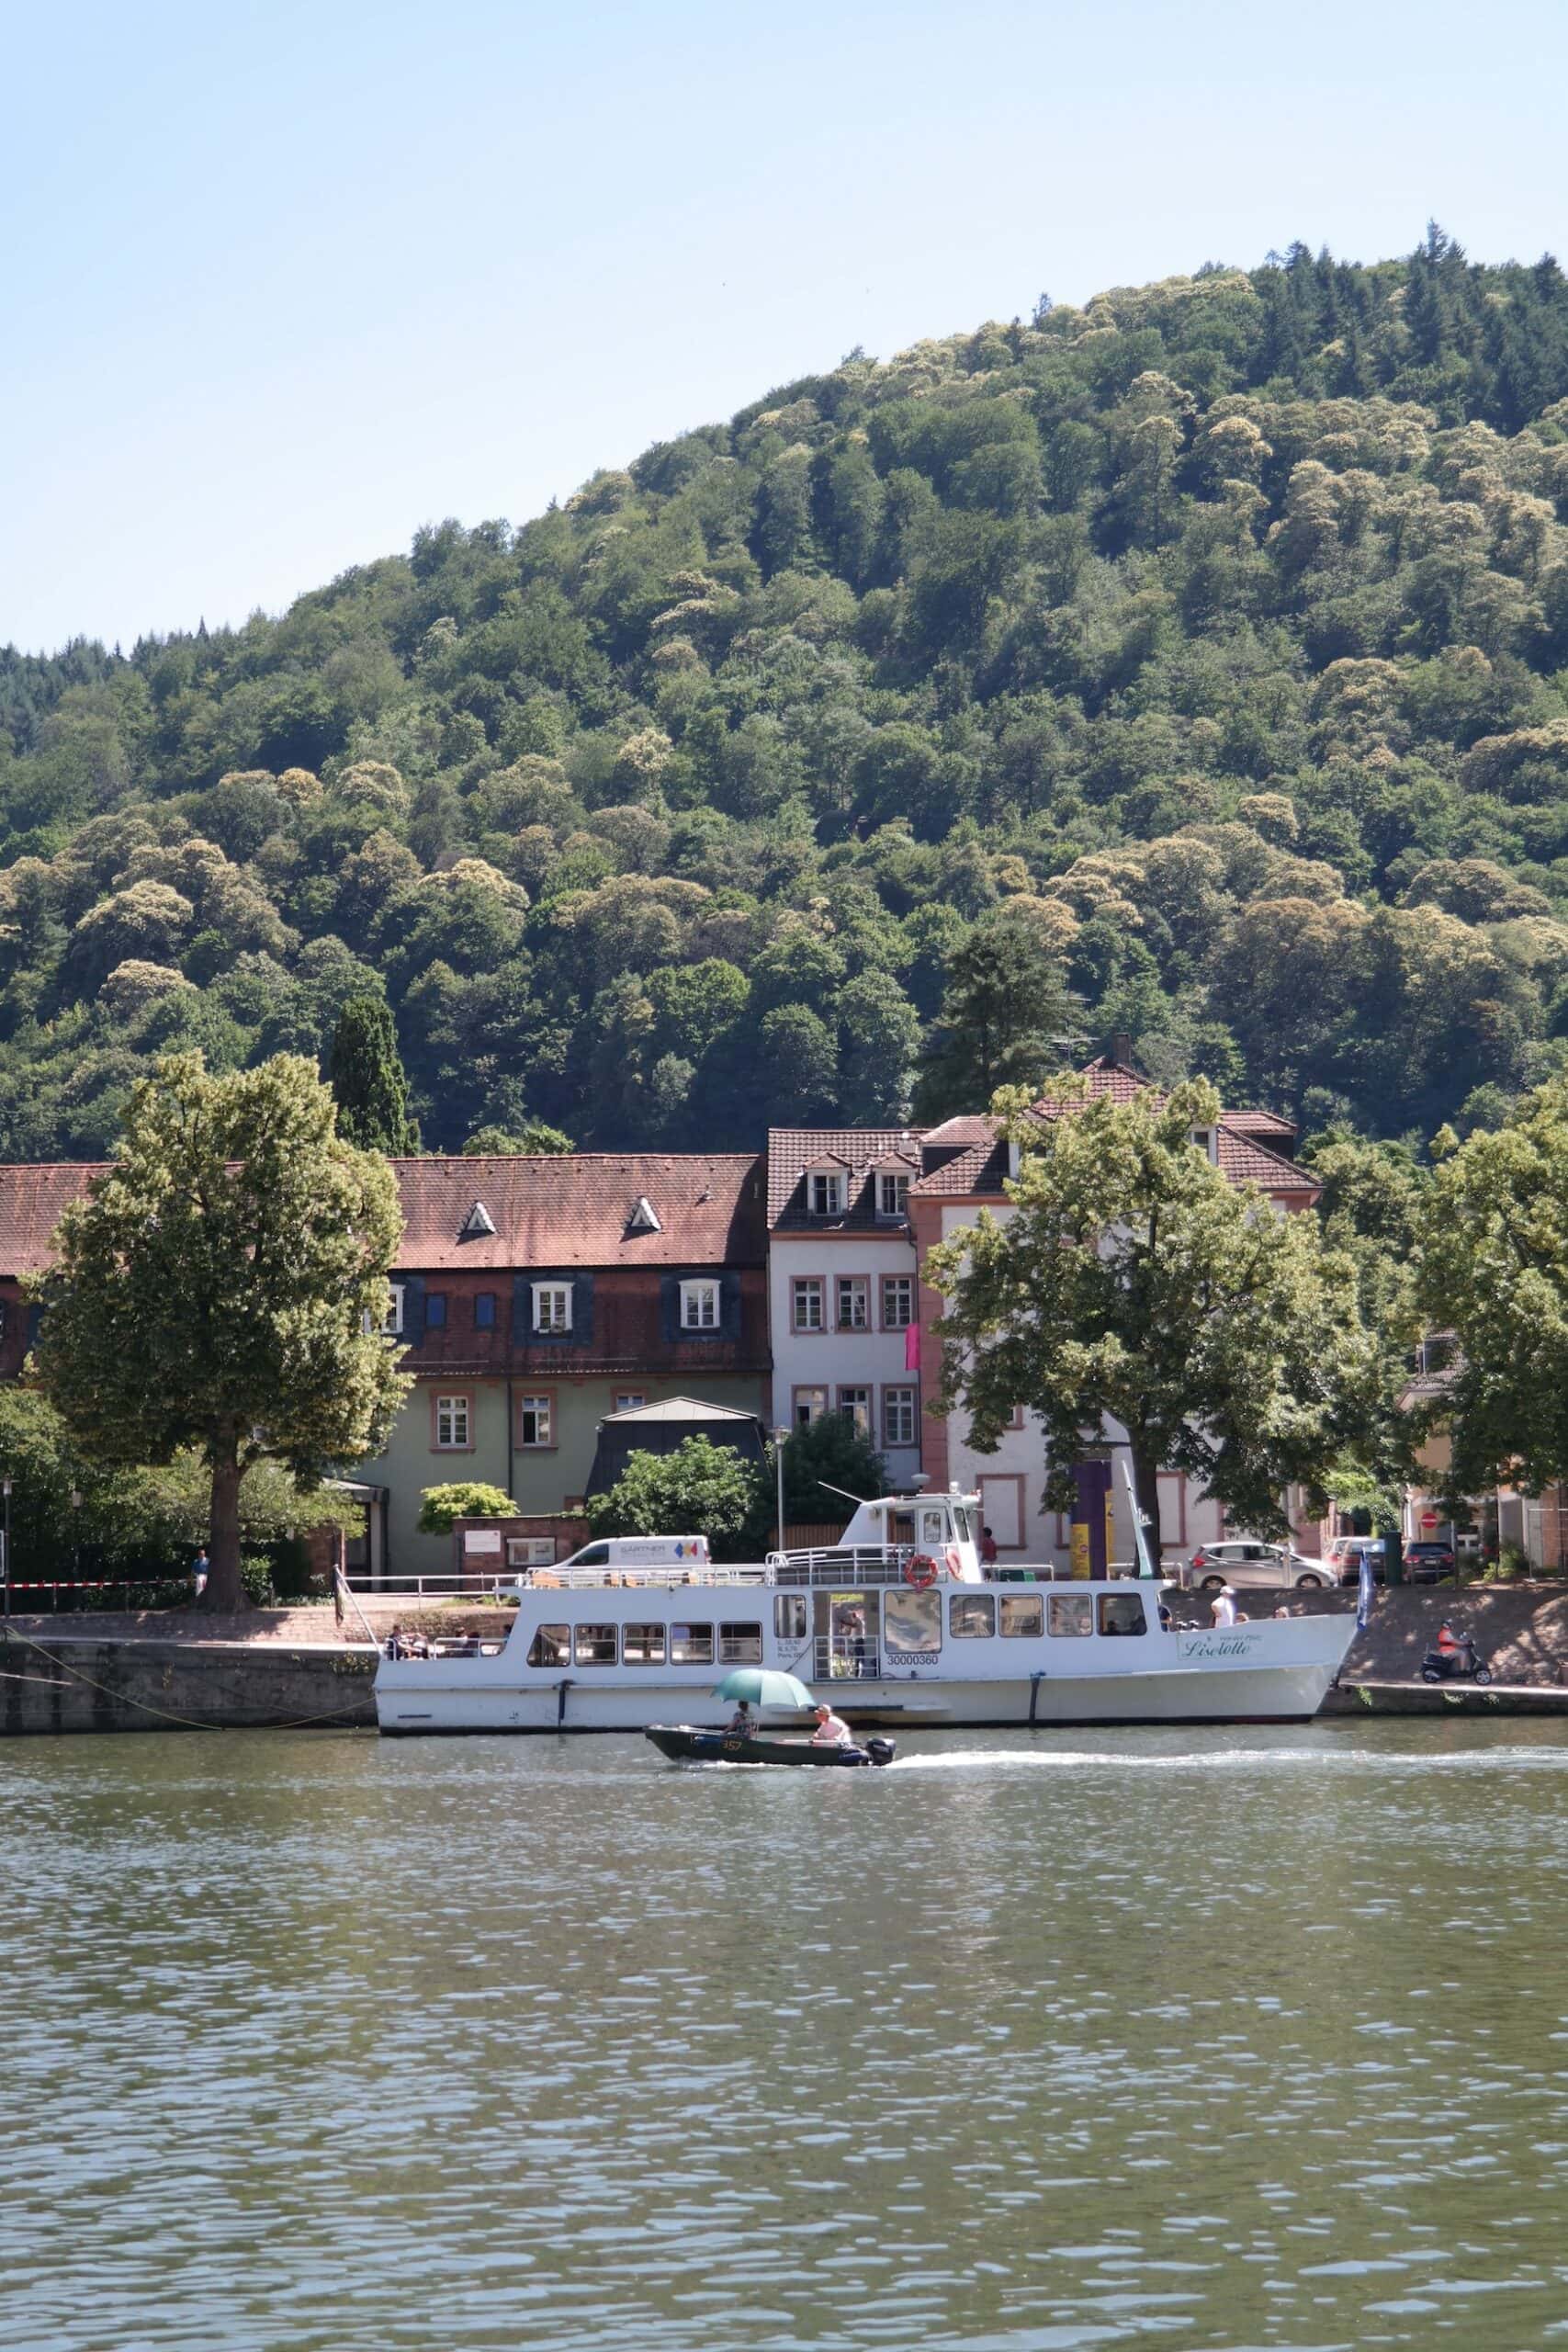 Eine Fahrt mit der Neckarfähre Liselotte von der Pfalz gehört zu einer Heidelberg-Reise dazu